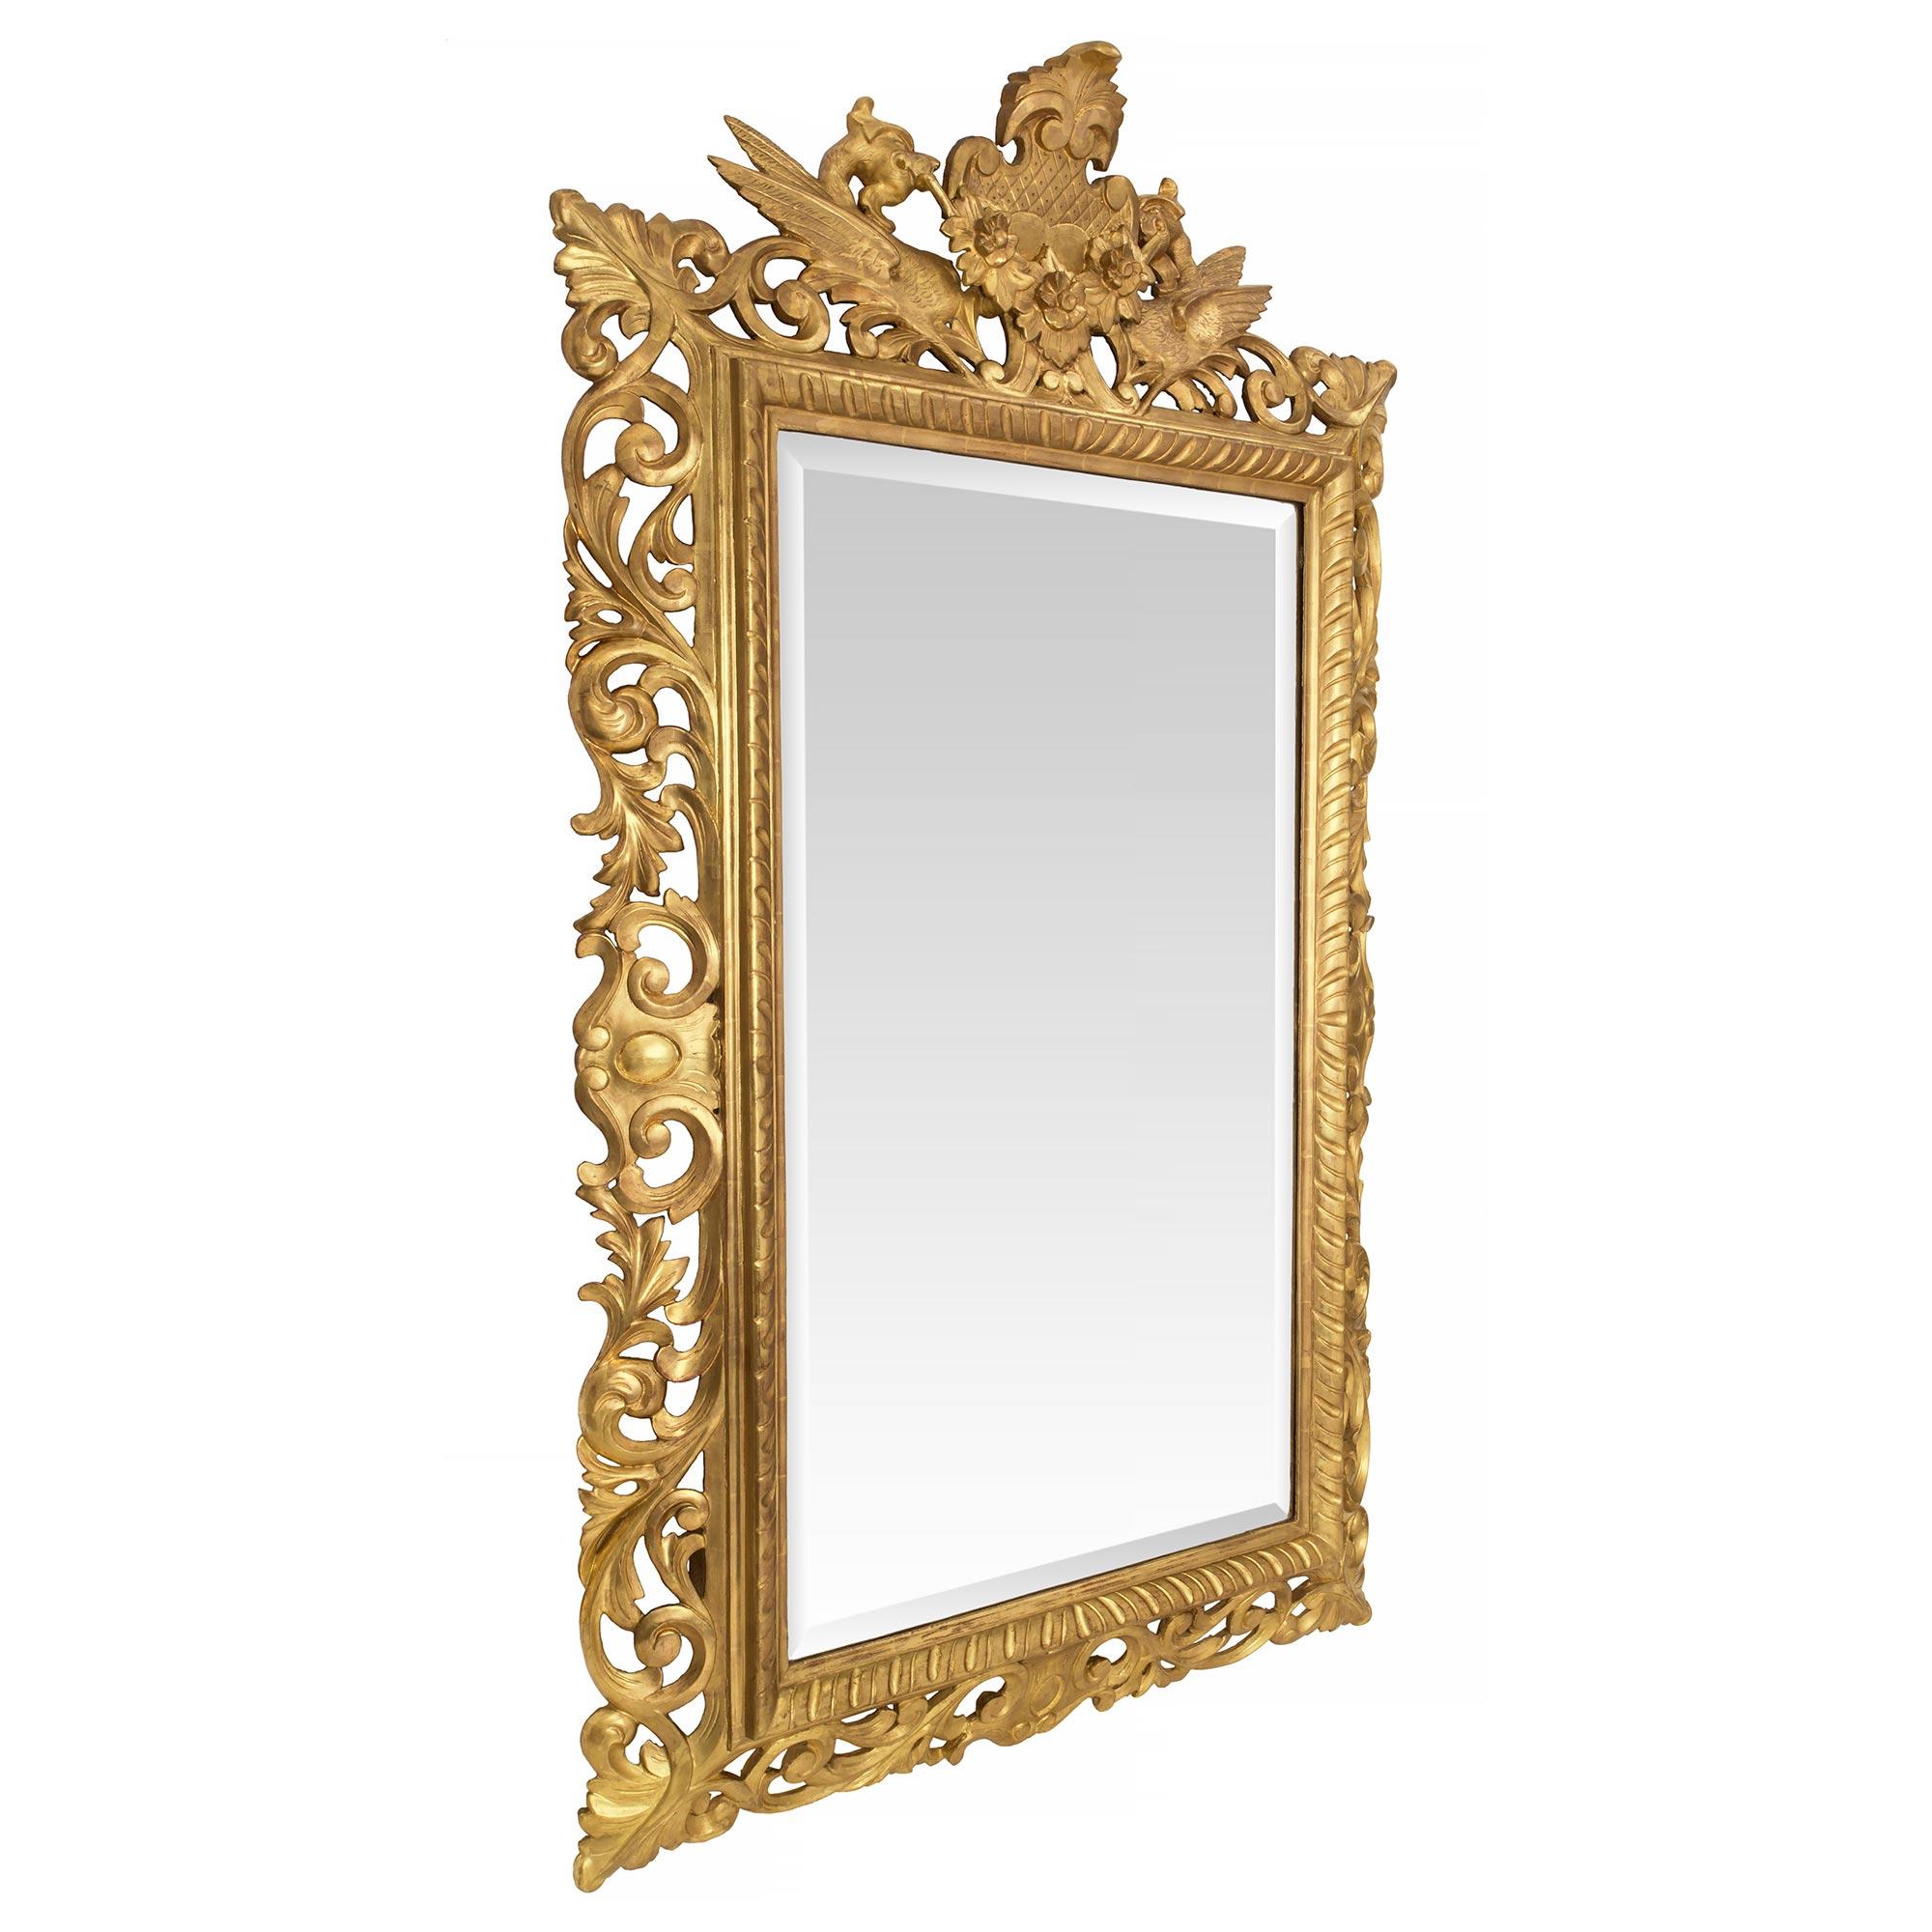 Exceptionnel miroir baroque italien du 19ème siècle en bois doré. La plaque de miroir biseautée d'origine est encadrée dans un motif cannelé très décoratif. S'étendant le long de la base et sur chaque côté, de riches mouvements sculptés de volutes